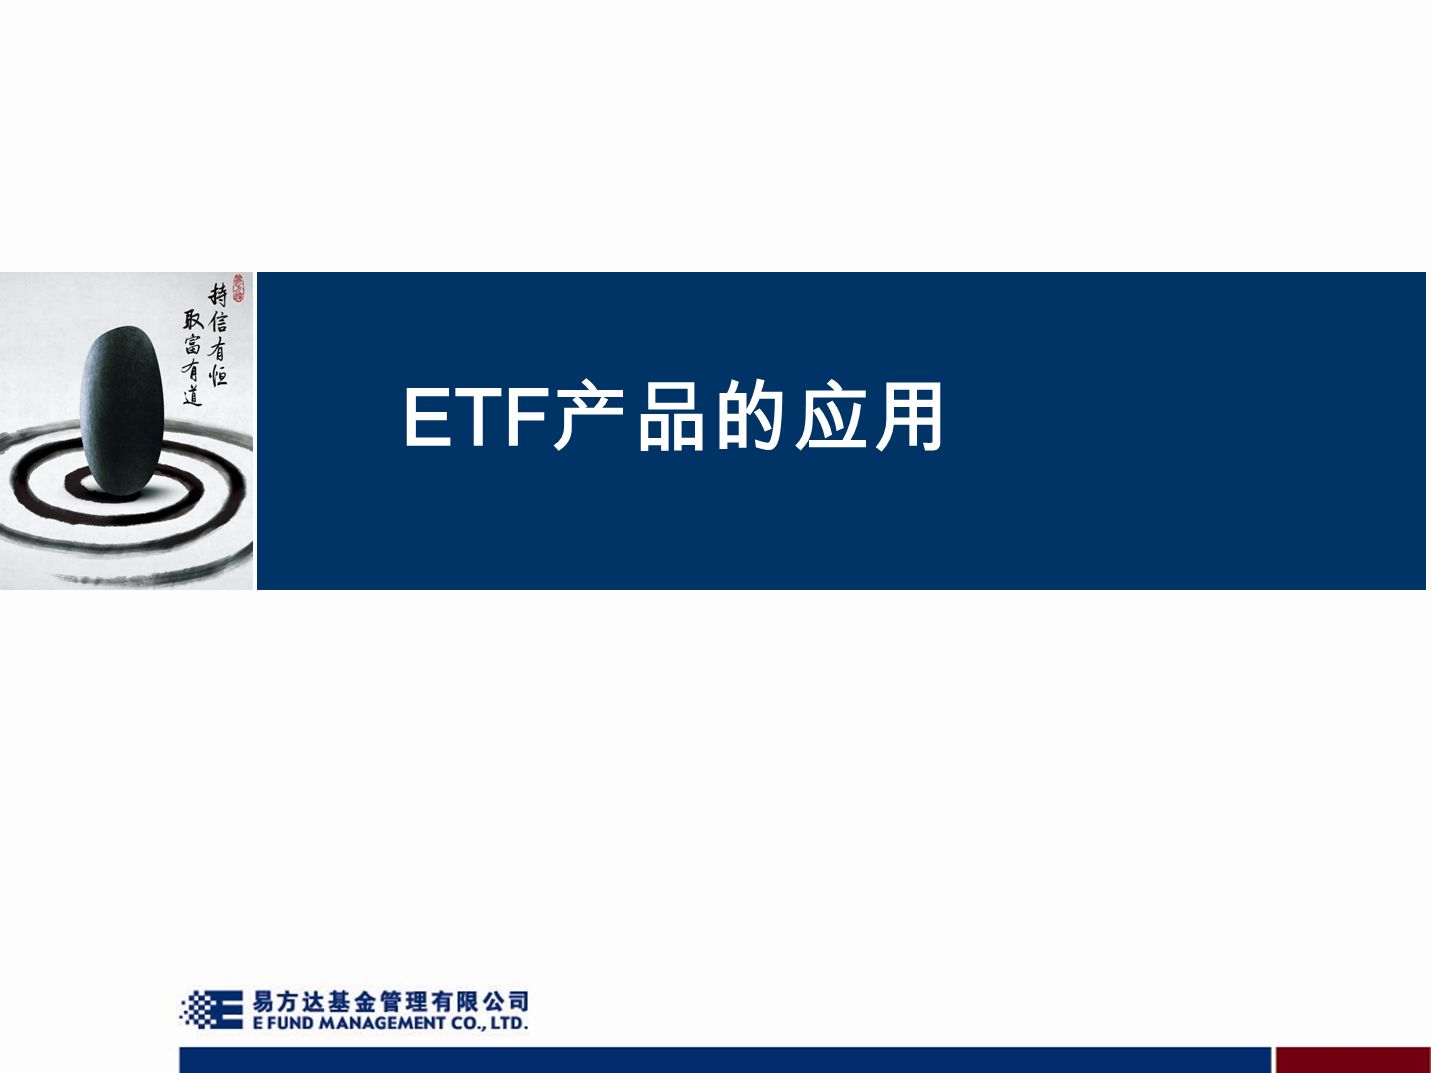 ETF 产品的应用